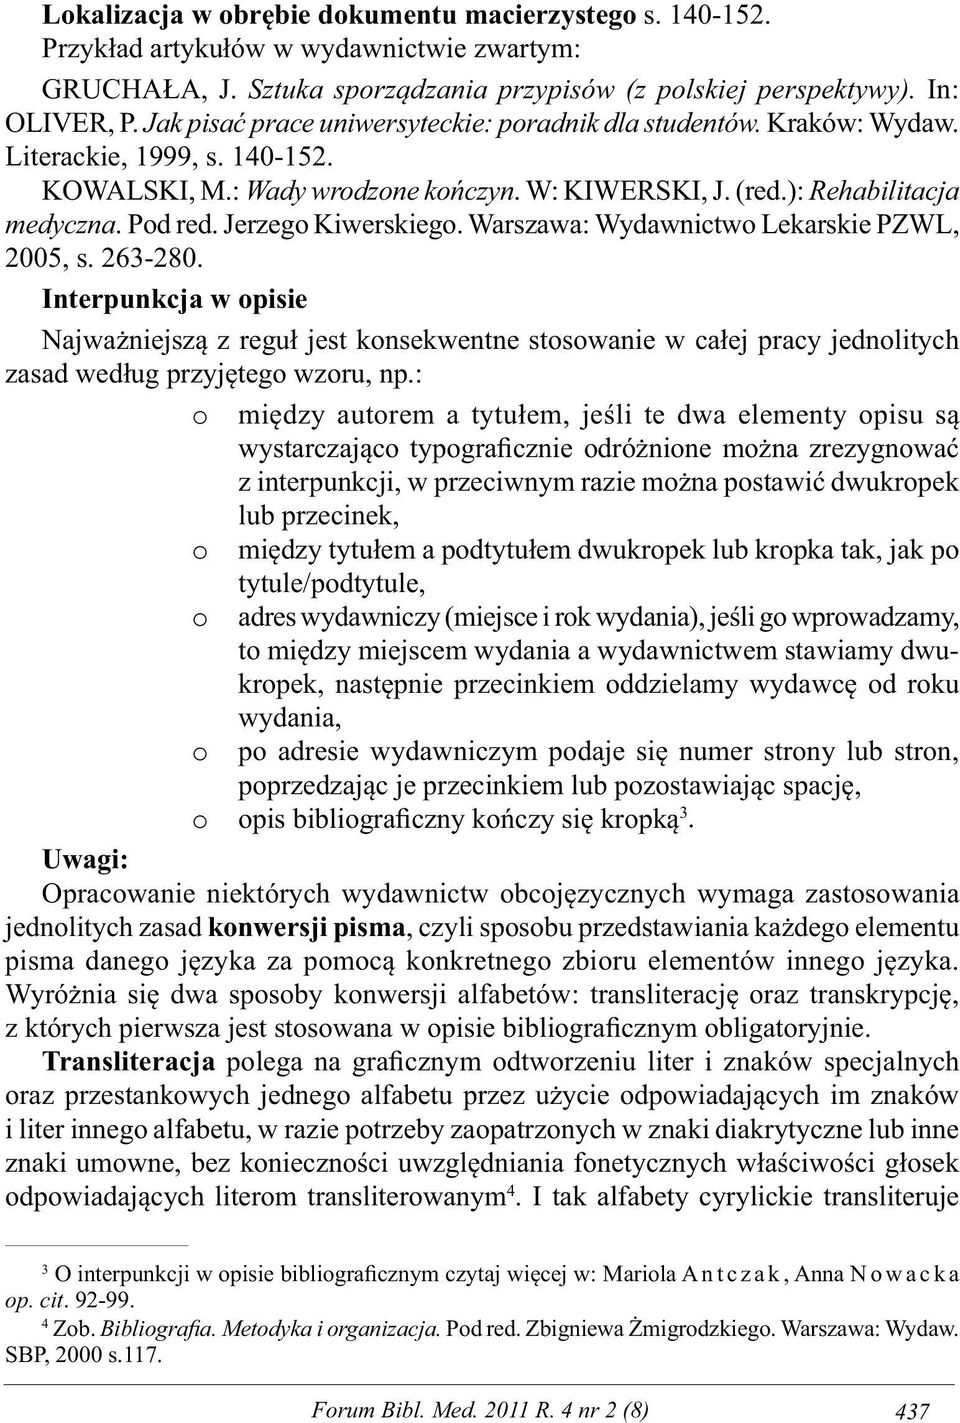 Jerzego Kiwerskiego. Warszawa: Wydawnictwo Lekarskie PZWL, 2005, s. 263-280.